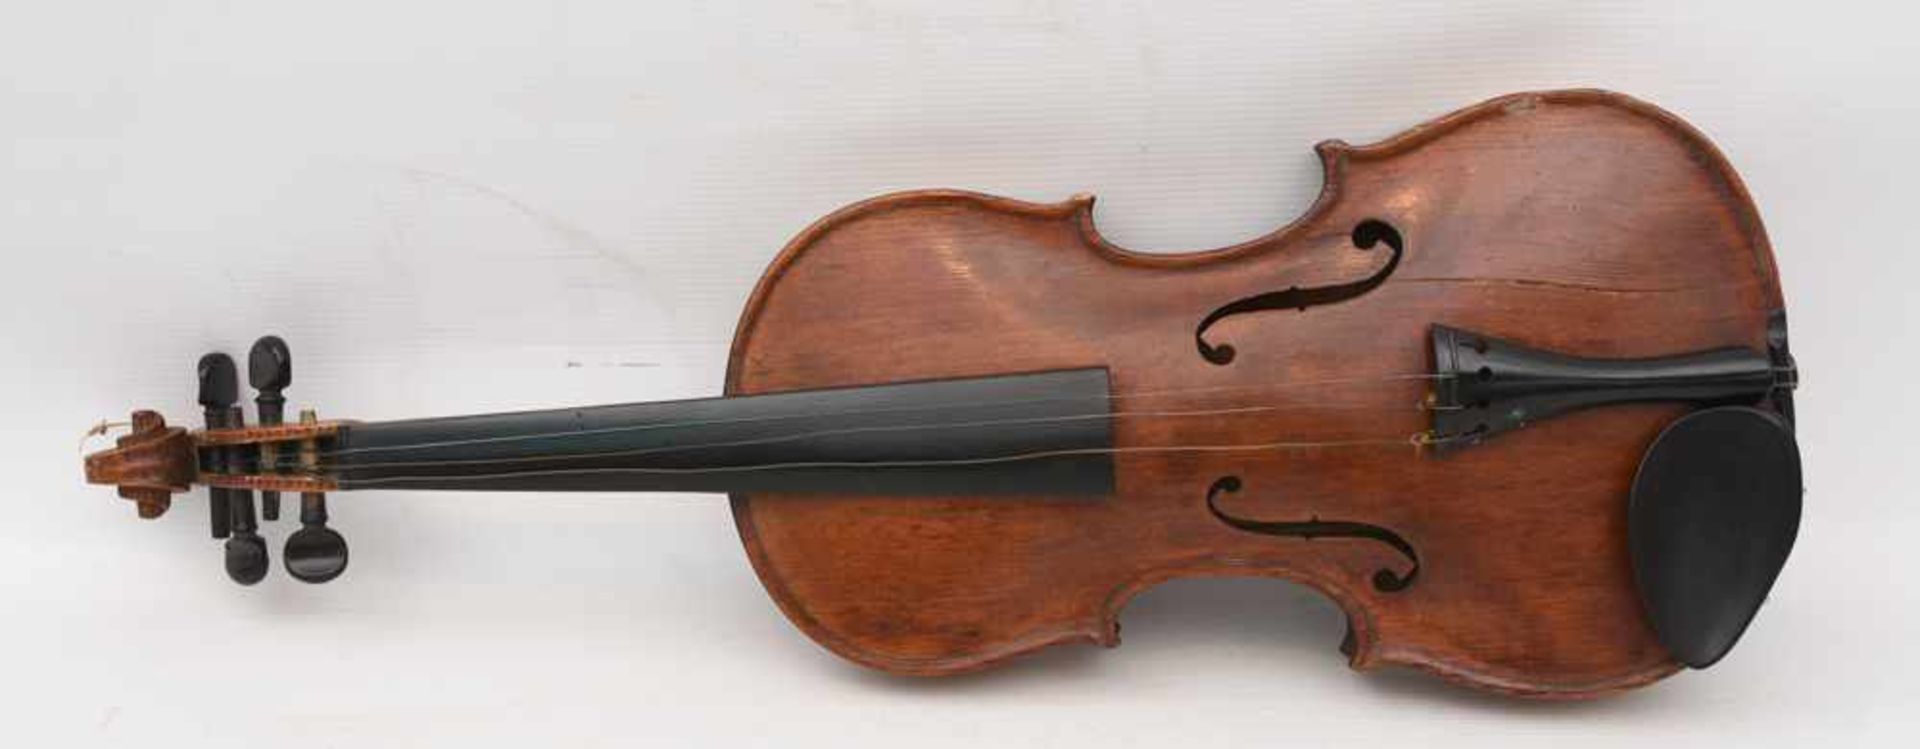 GEIGE 1, Holz/Rosshaar, Deutschland 1. Hälfte 20. Jahrhundert Geige im Kasten mit Bogen. Beschädigt. - Bild 2 aus 8